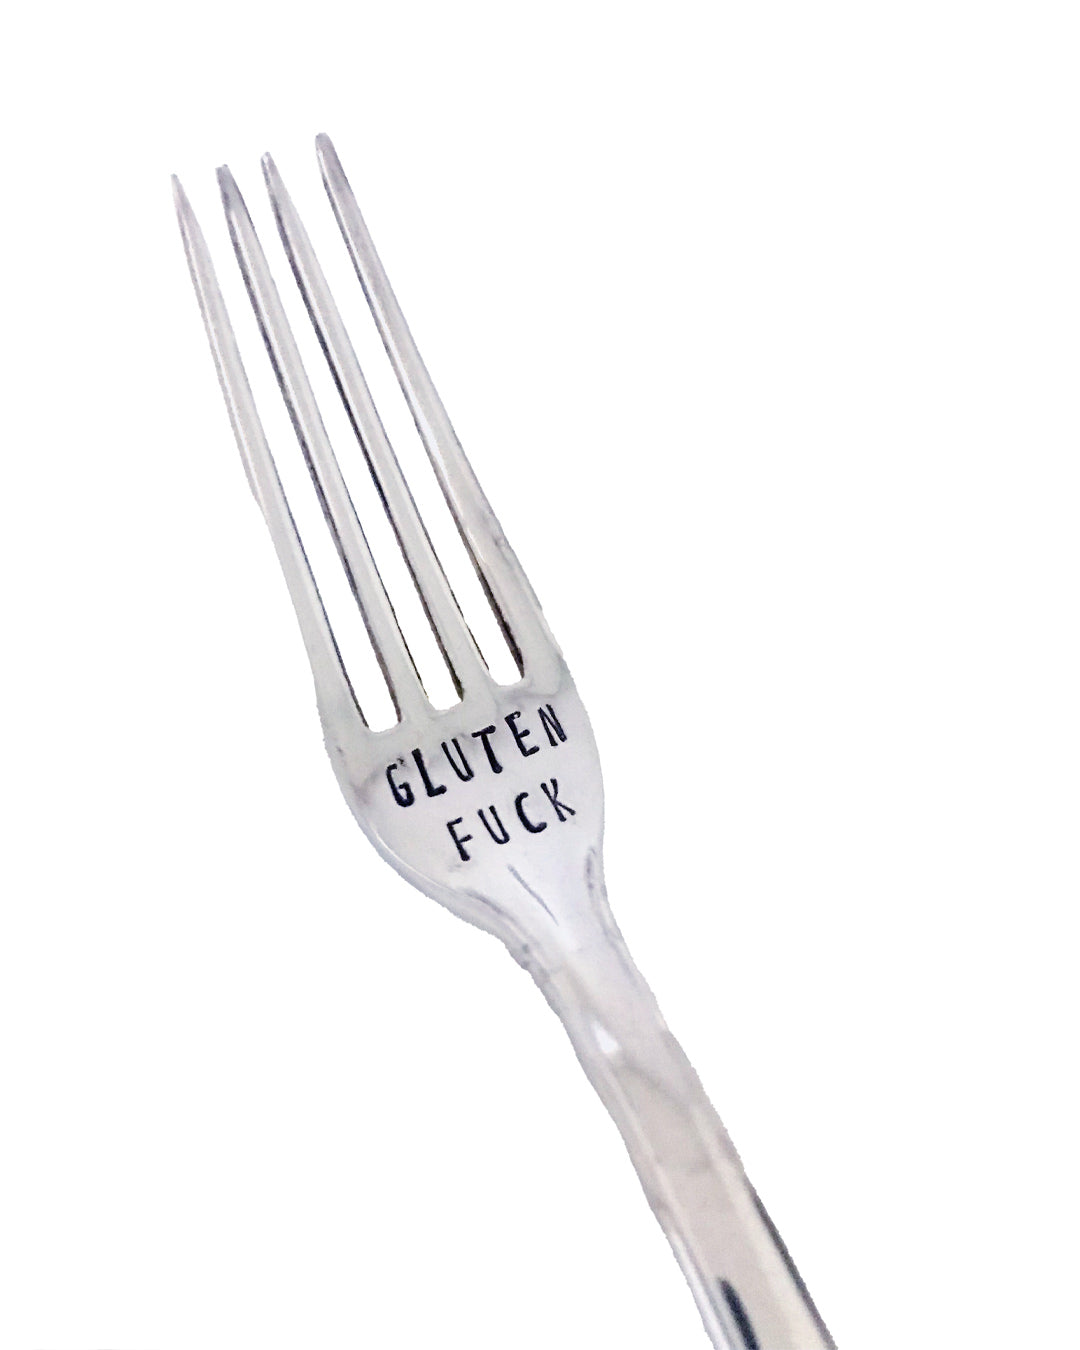 Vintage Silver Hand-stamped fork